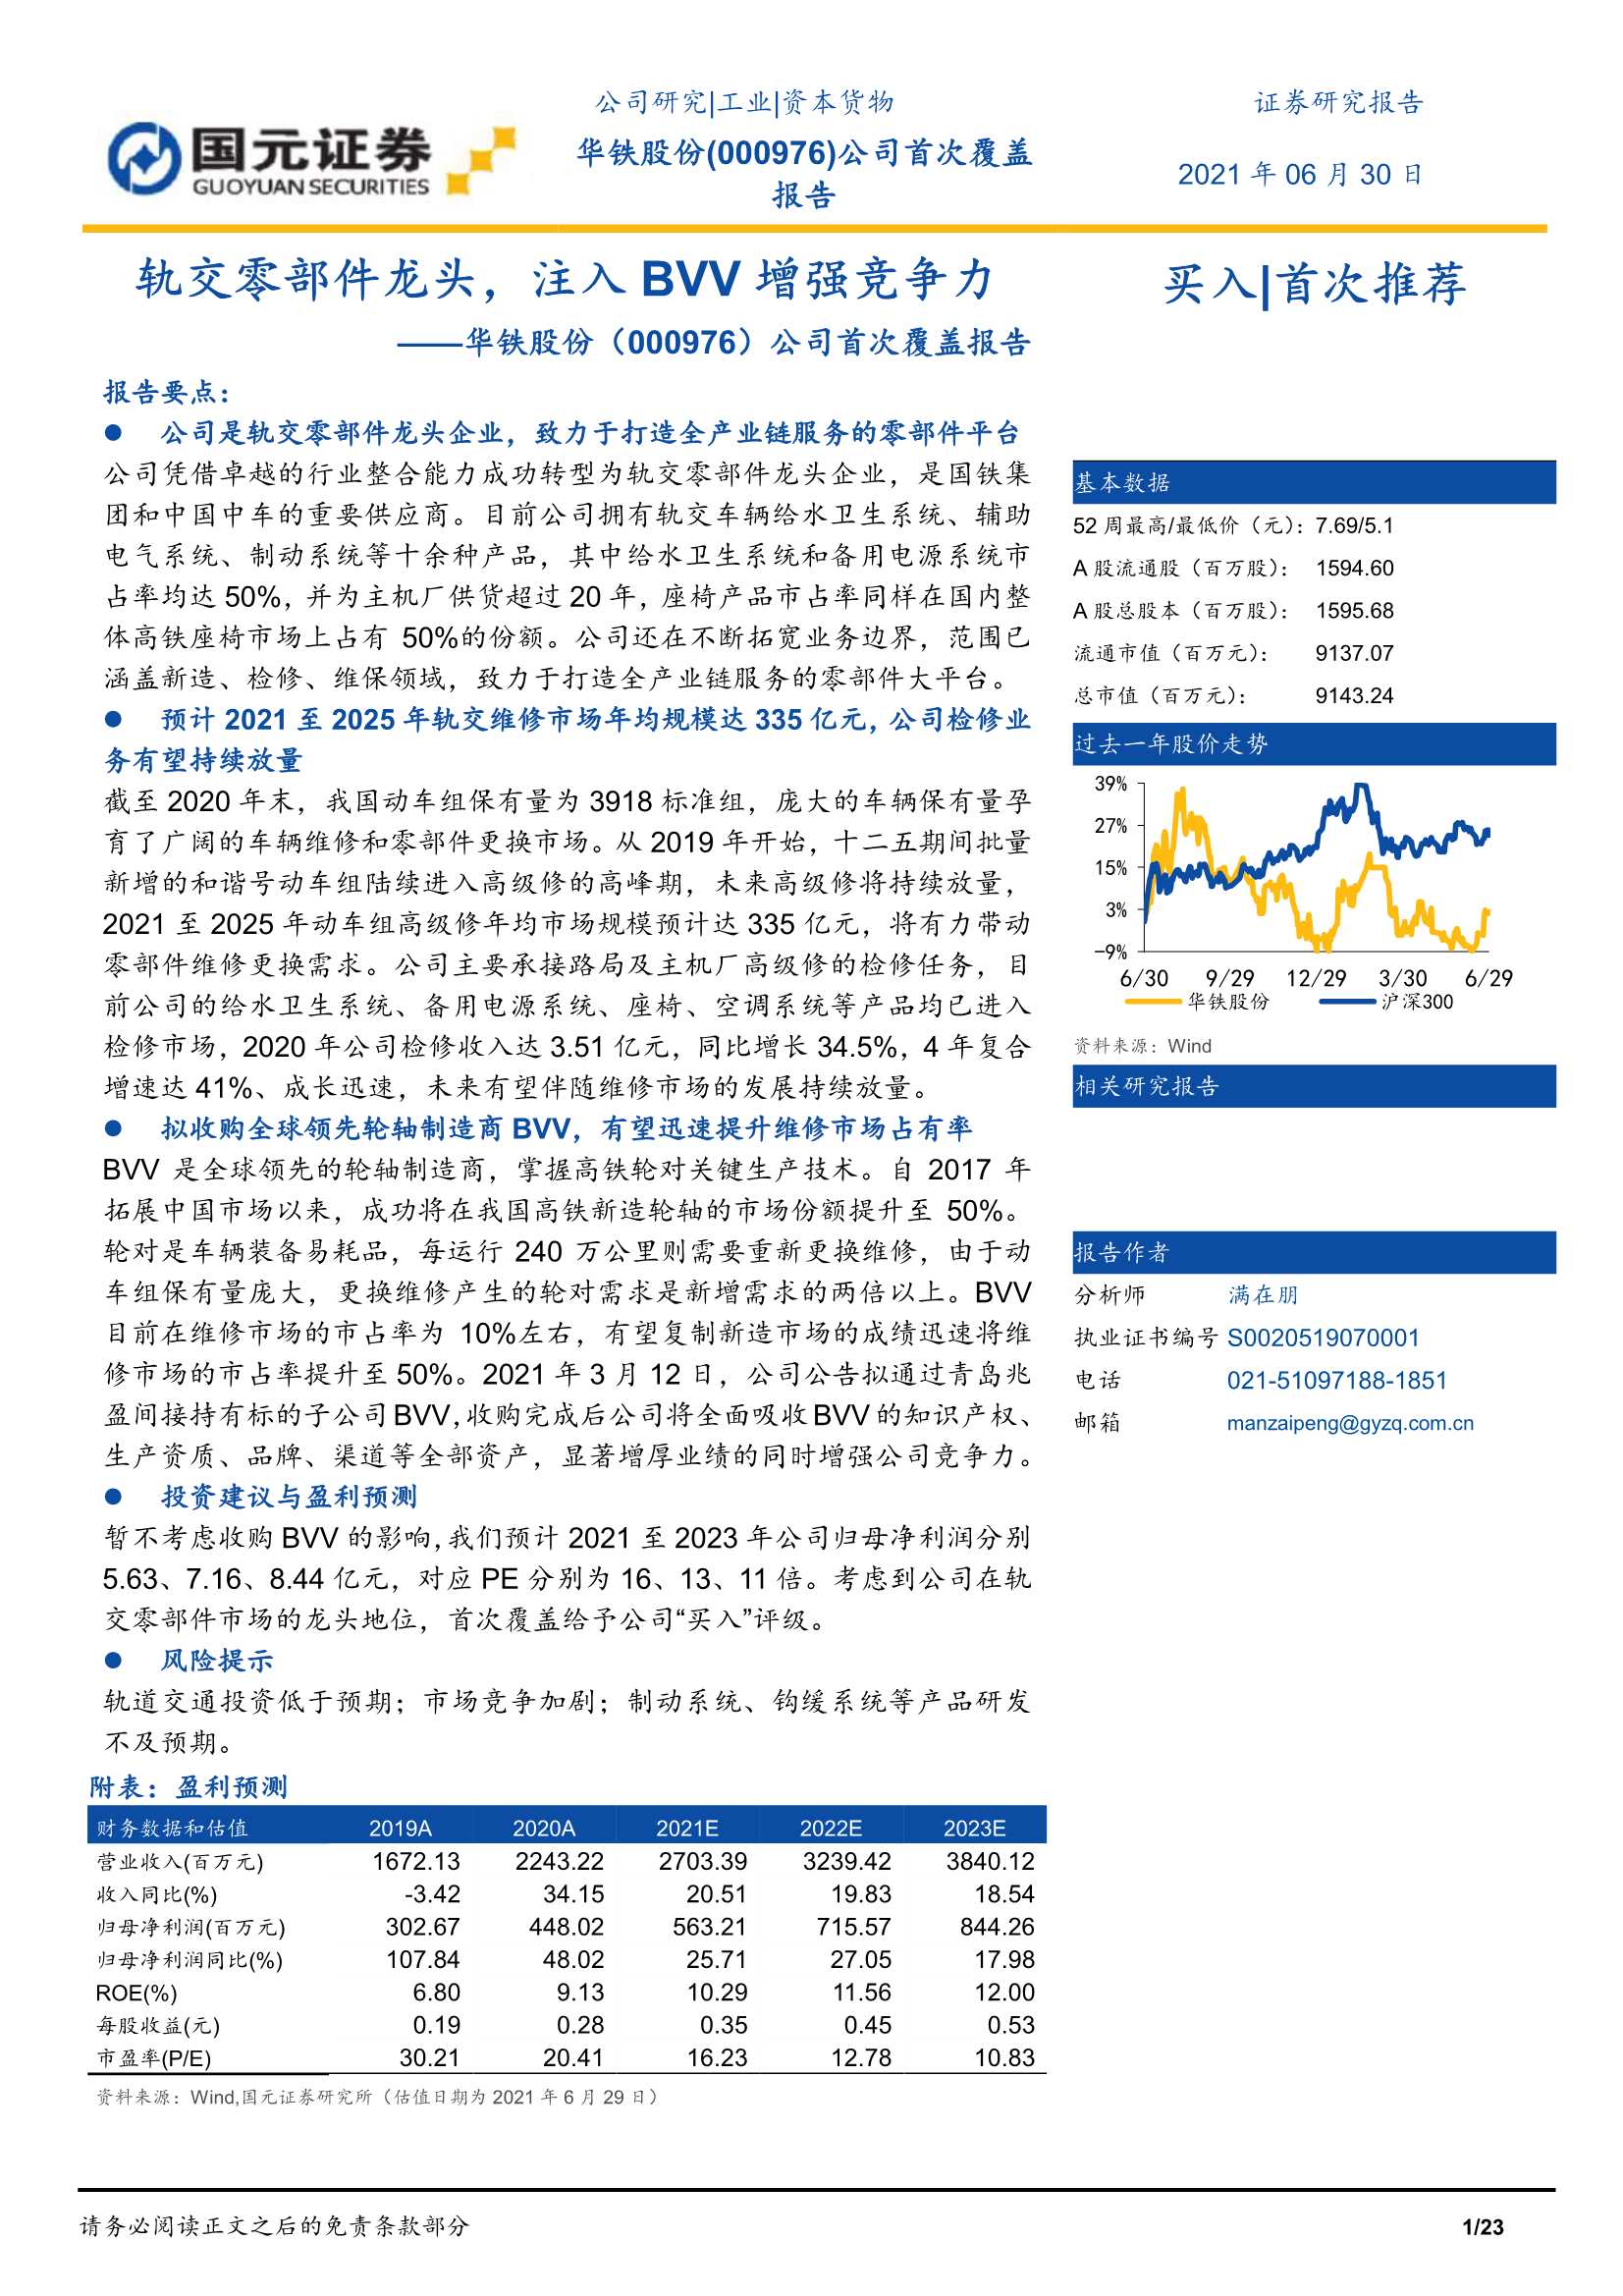 国元证券-华铁股份（000976）：公司首次覆盖报告：轨交零部件龙头，注入BVV增强竞争力-20210630-23页